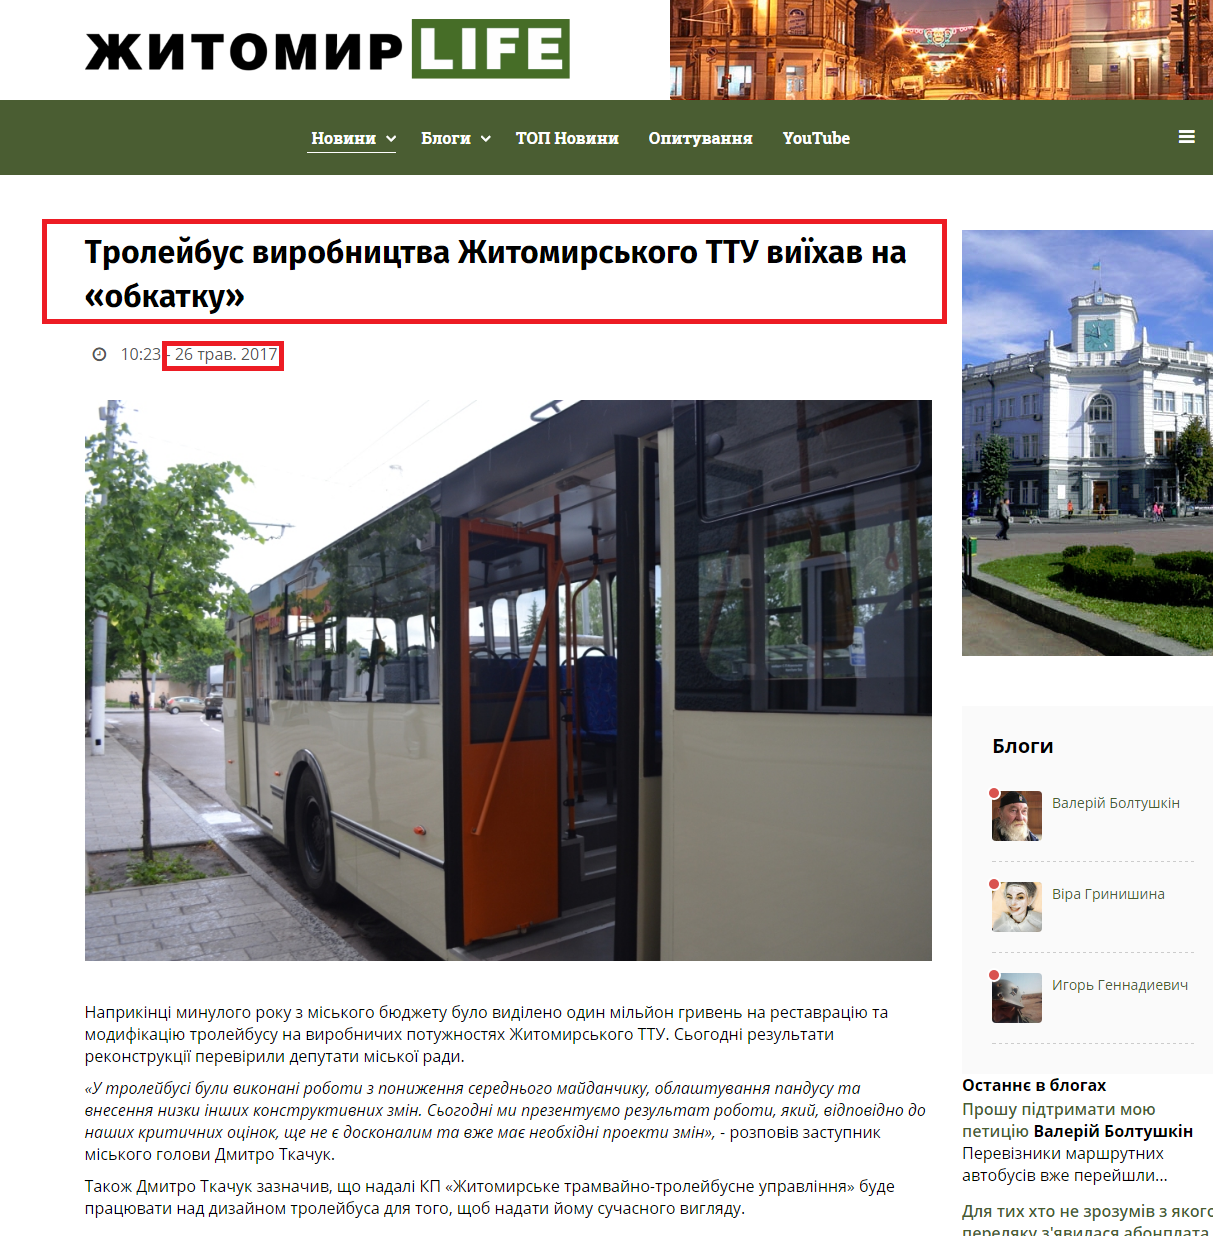 http://zhitomir.life/1194-trolejbus-virobnitstva-zhitomirskogo-ttu-vijikhav-na-obkatku.html